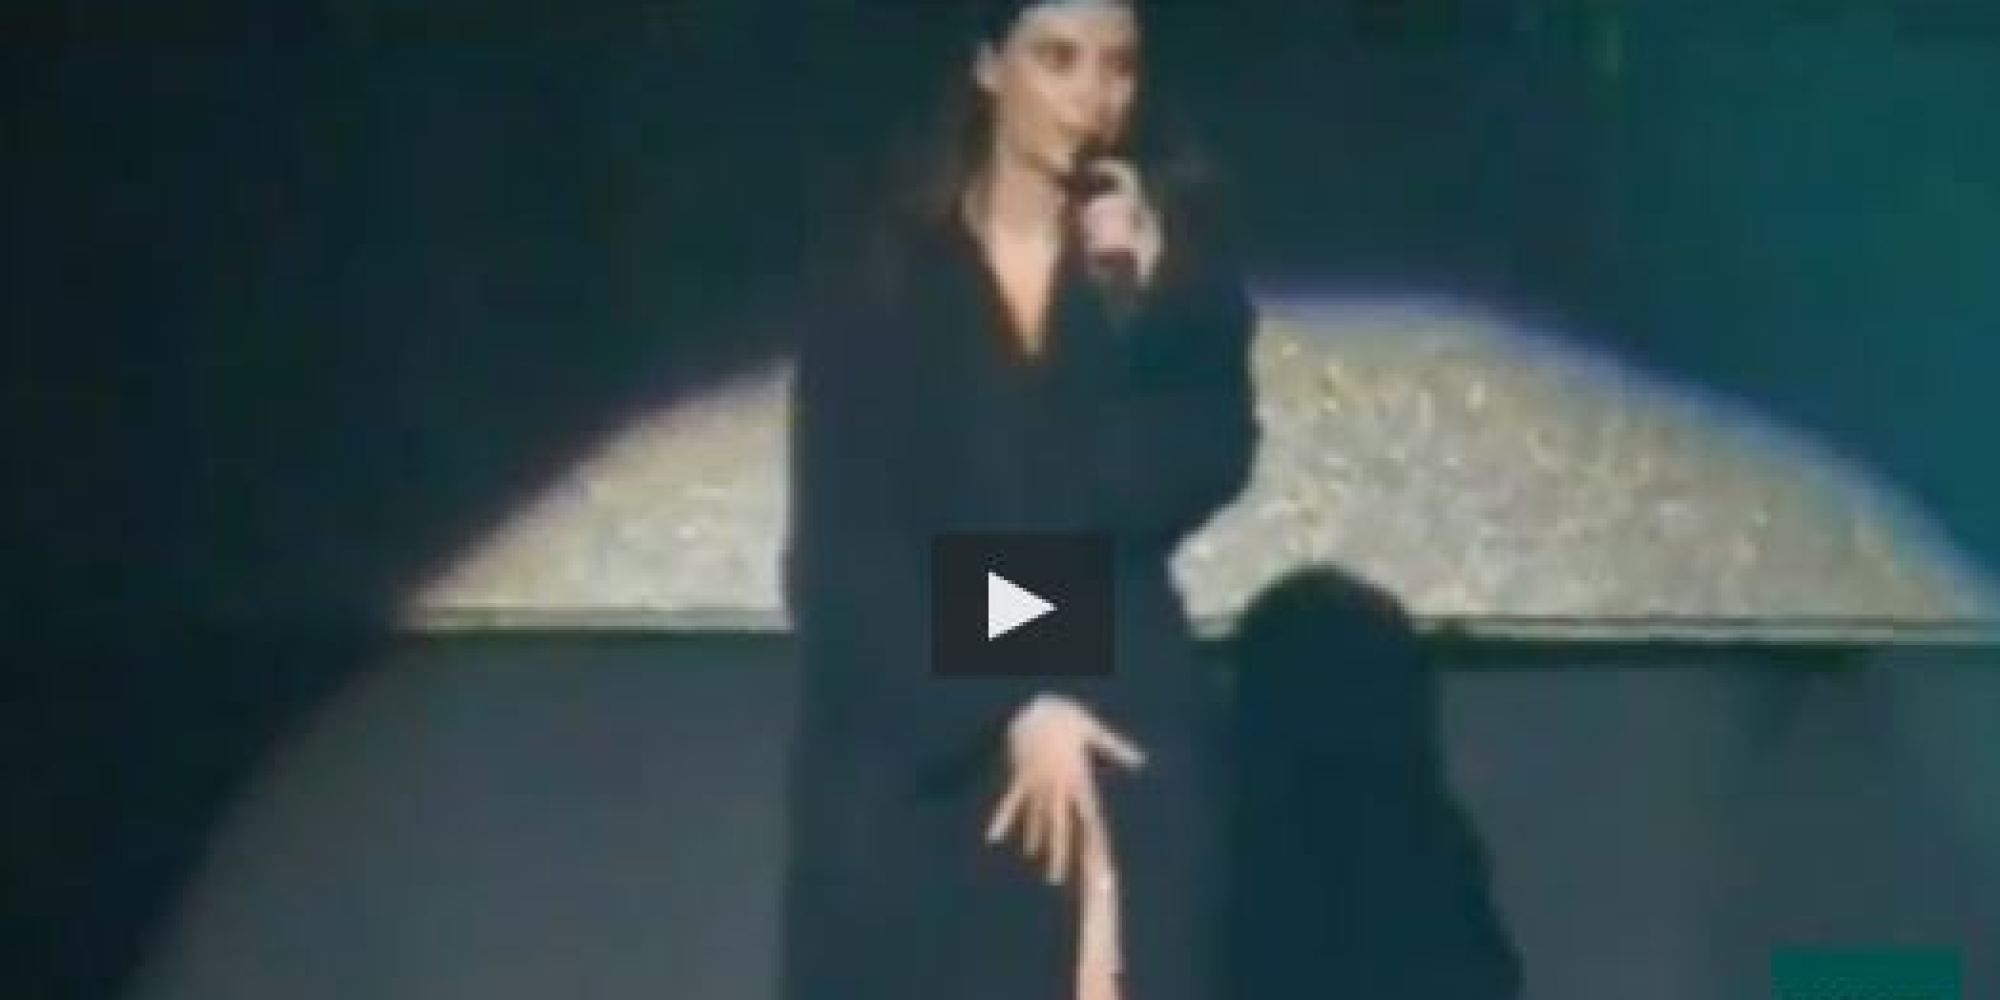 VIDEO Laura Pausini Nuda La Cantante Nega Su Facebook Non Lo Ero Ma